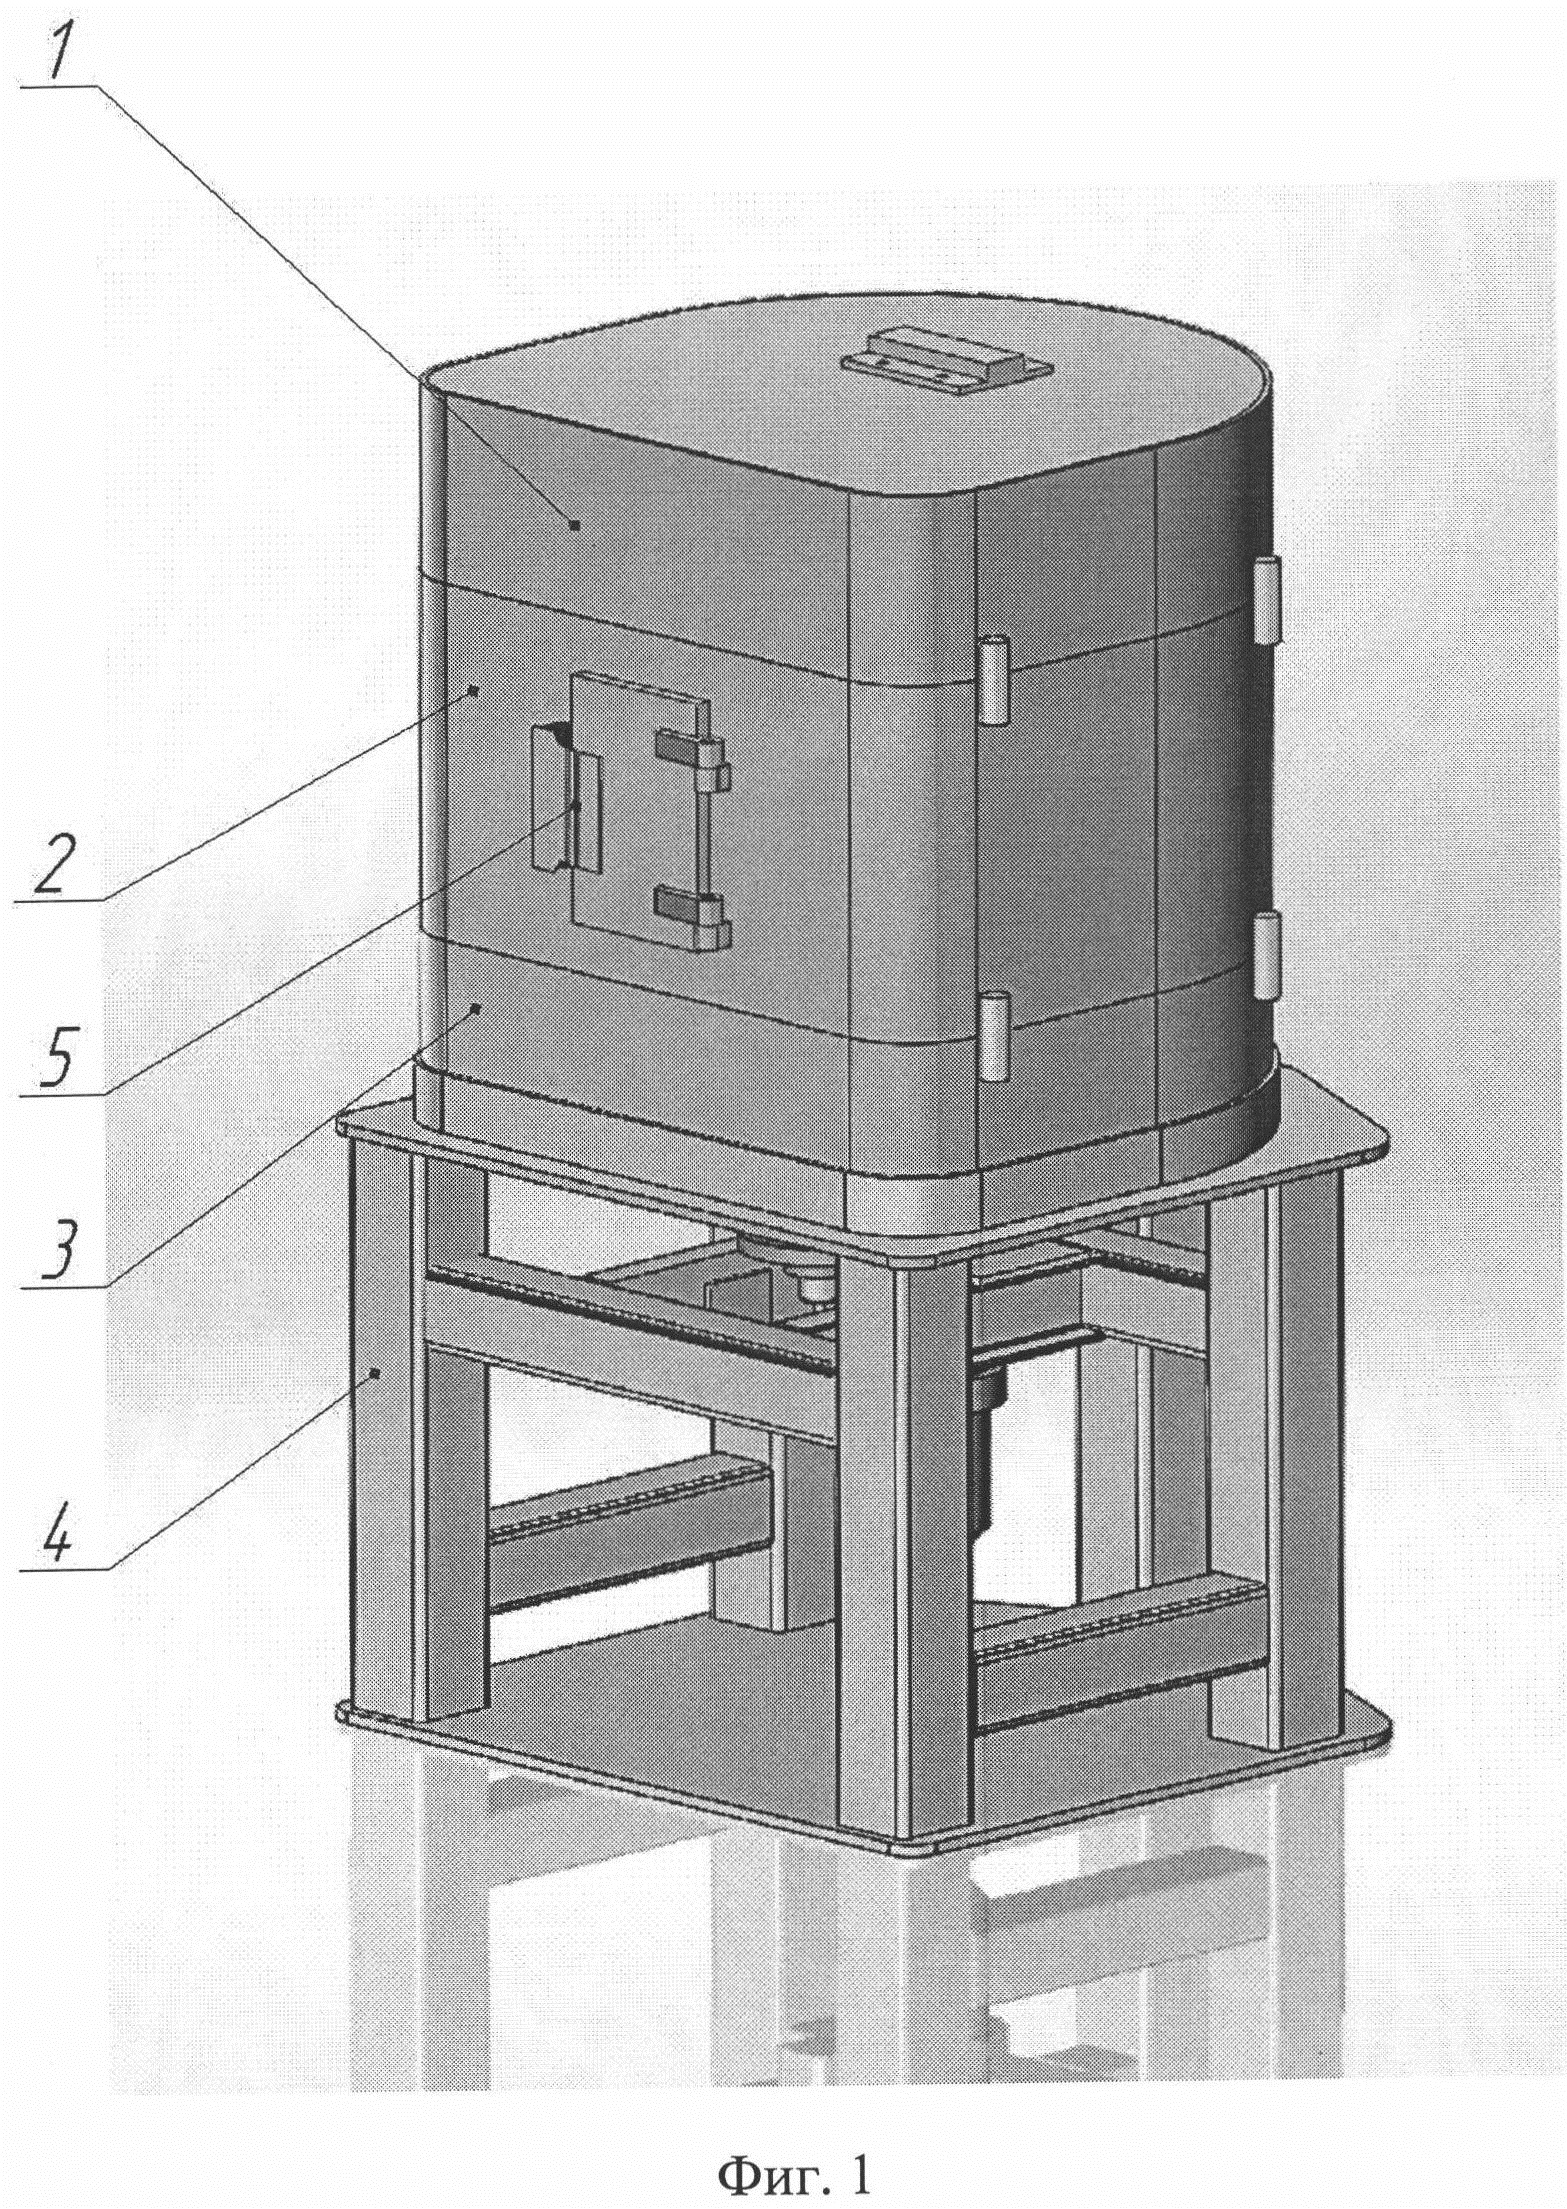 Гамма-установка для радиационной обработки различных объектов